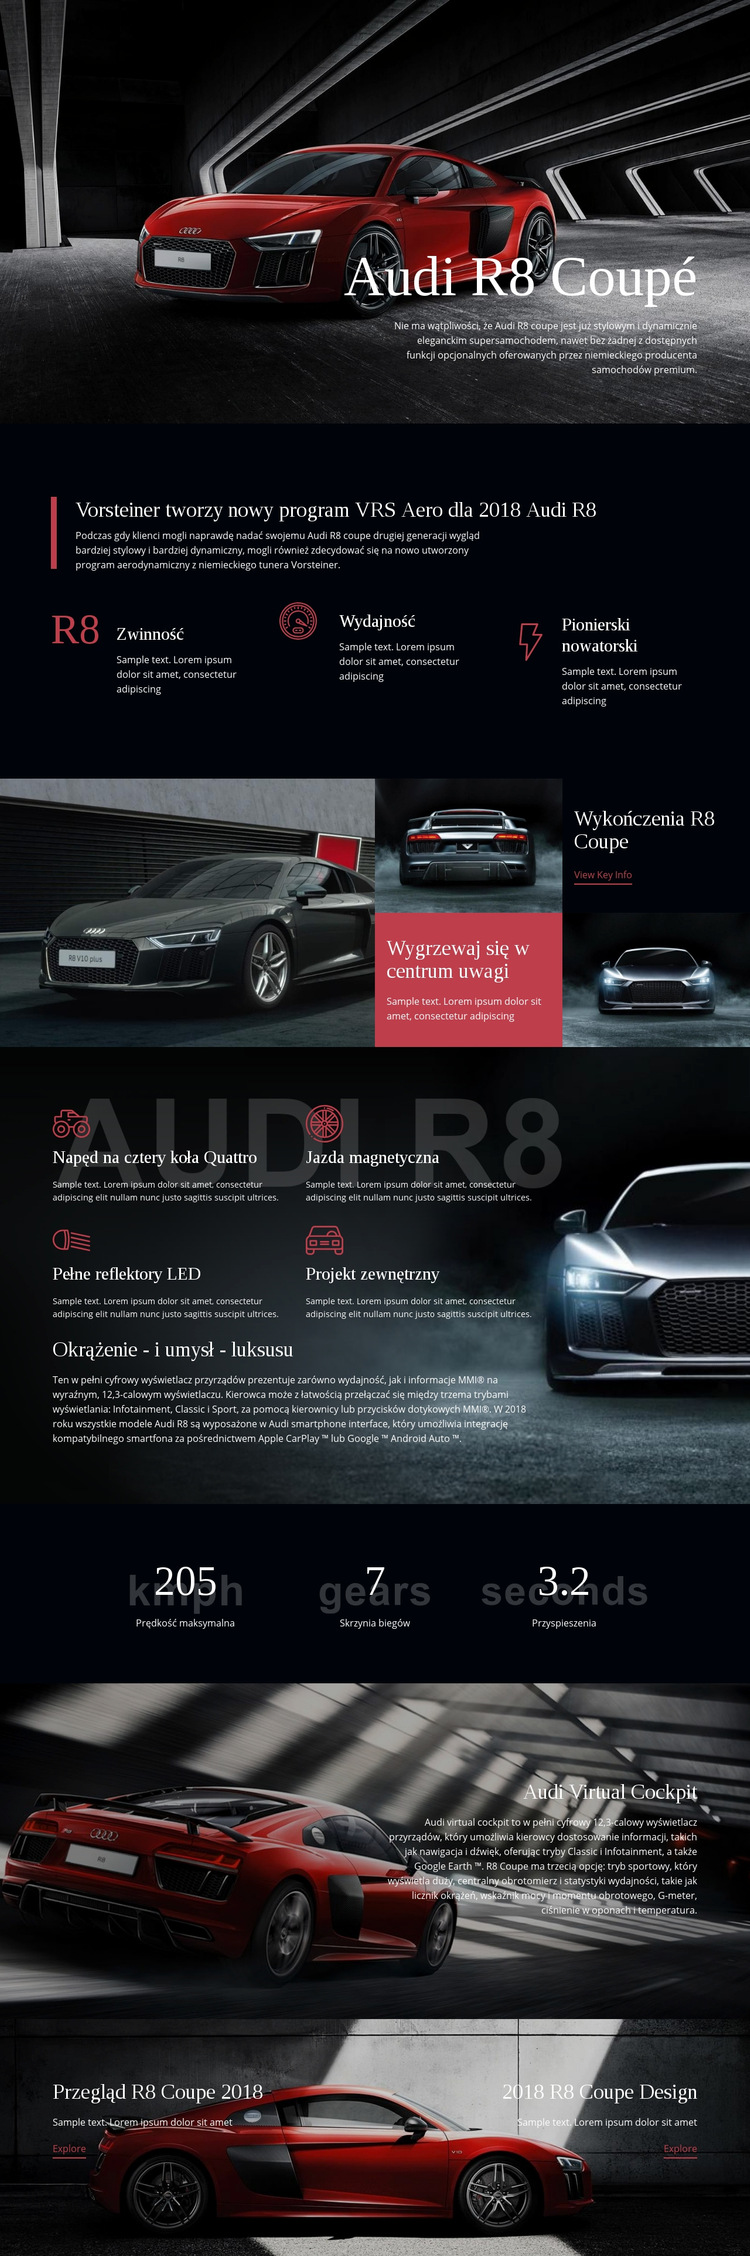 Samochód Audi aero program Szablon witryny sieci Web